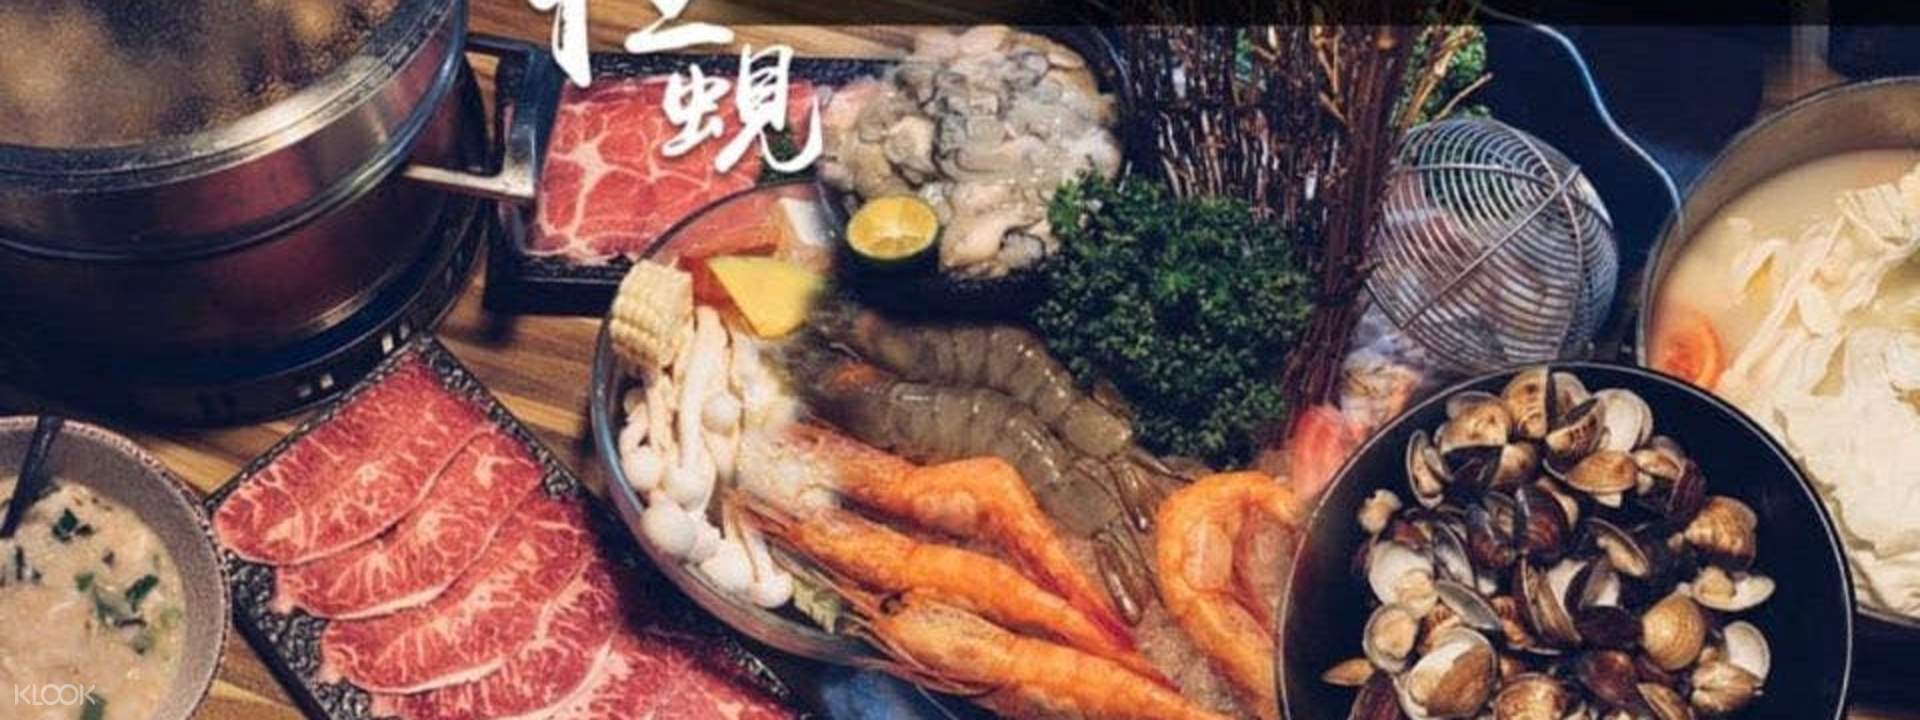 【線上訂位】極蜆鍋物 - 捷運南京三民站 - KLOOK客路 台灣